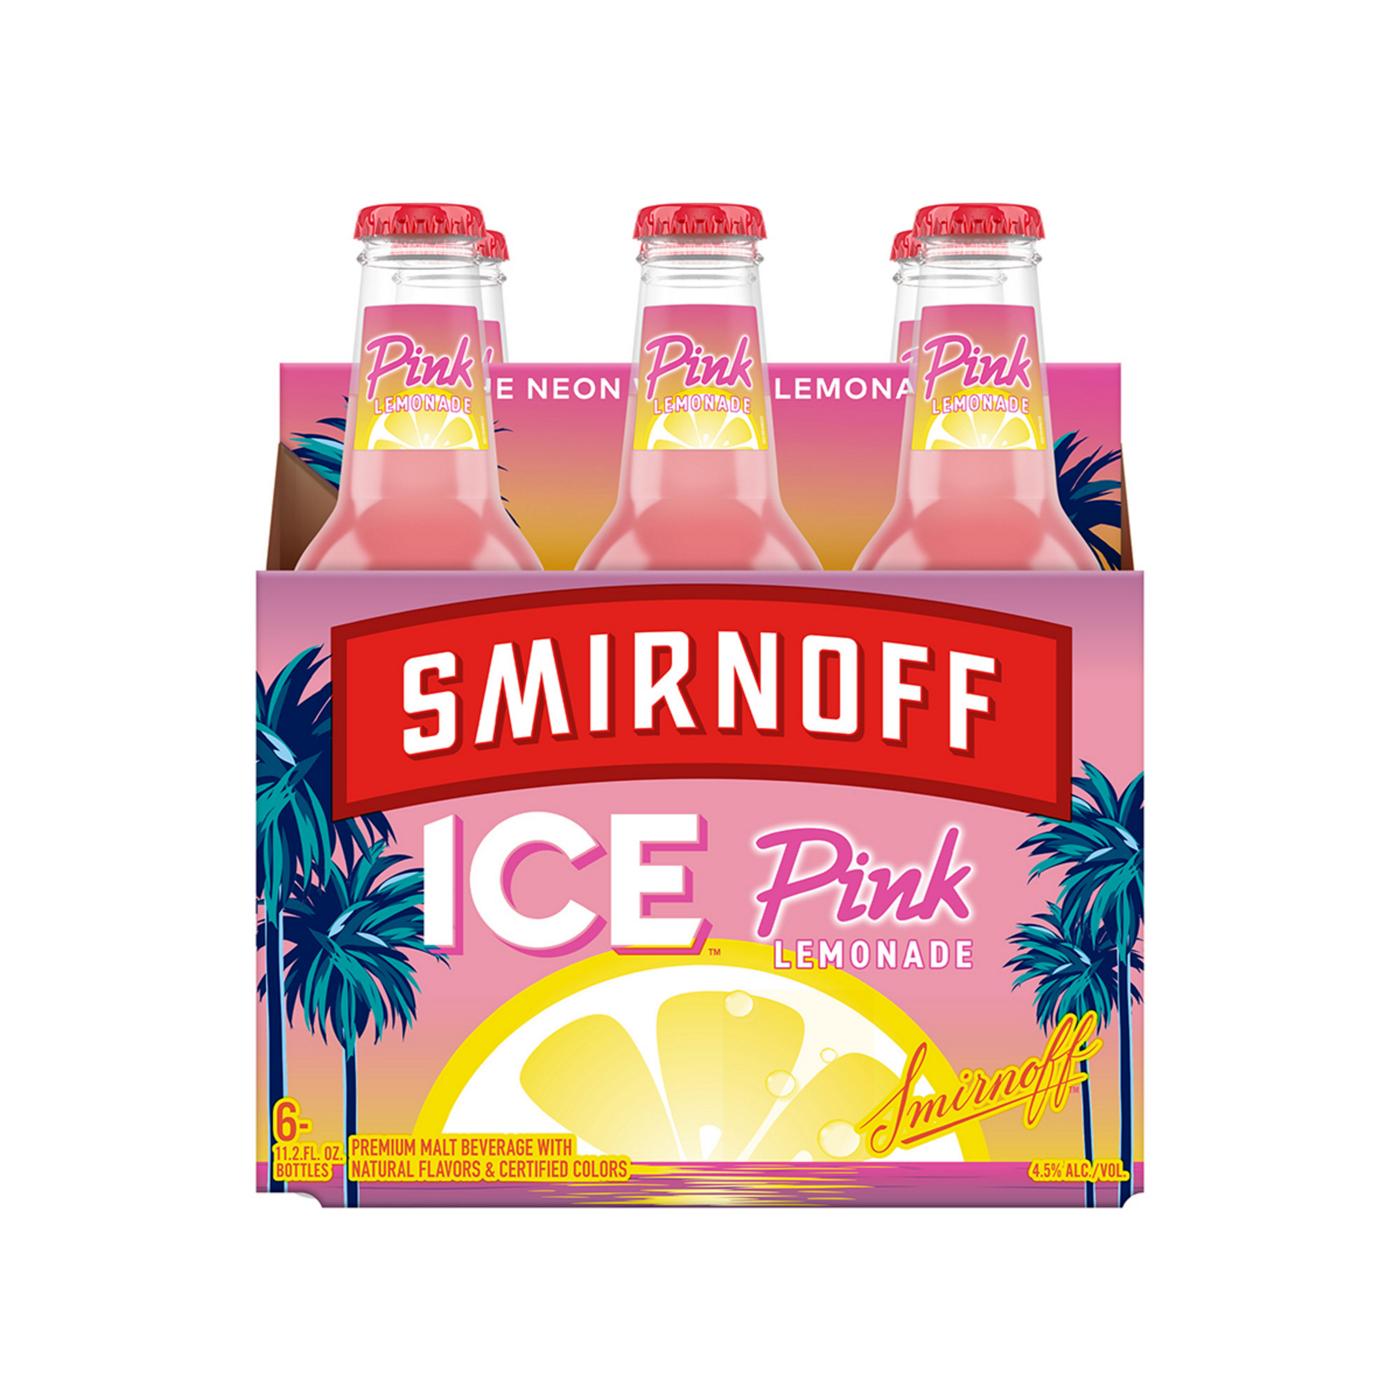 Smirnoff Ice Pink Lemonade; image 2 of 5